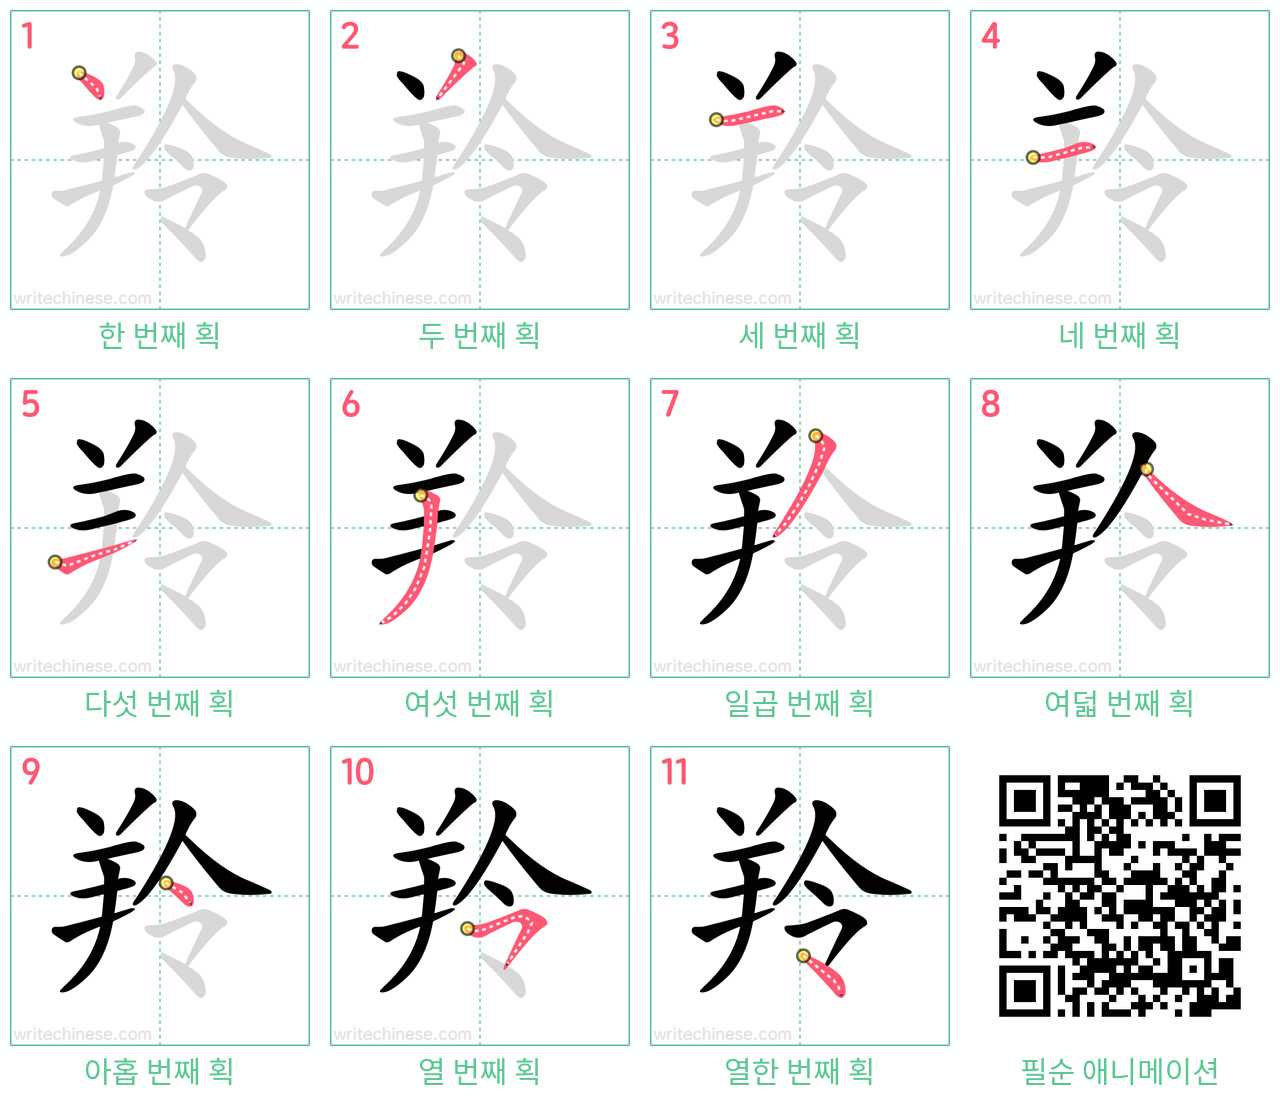 羚 step-by-step stroke order diagrams